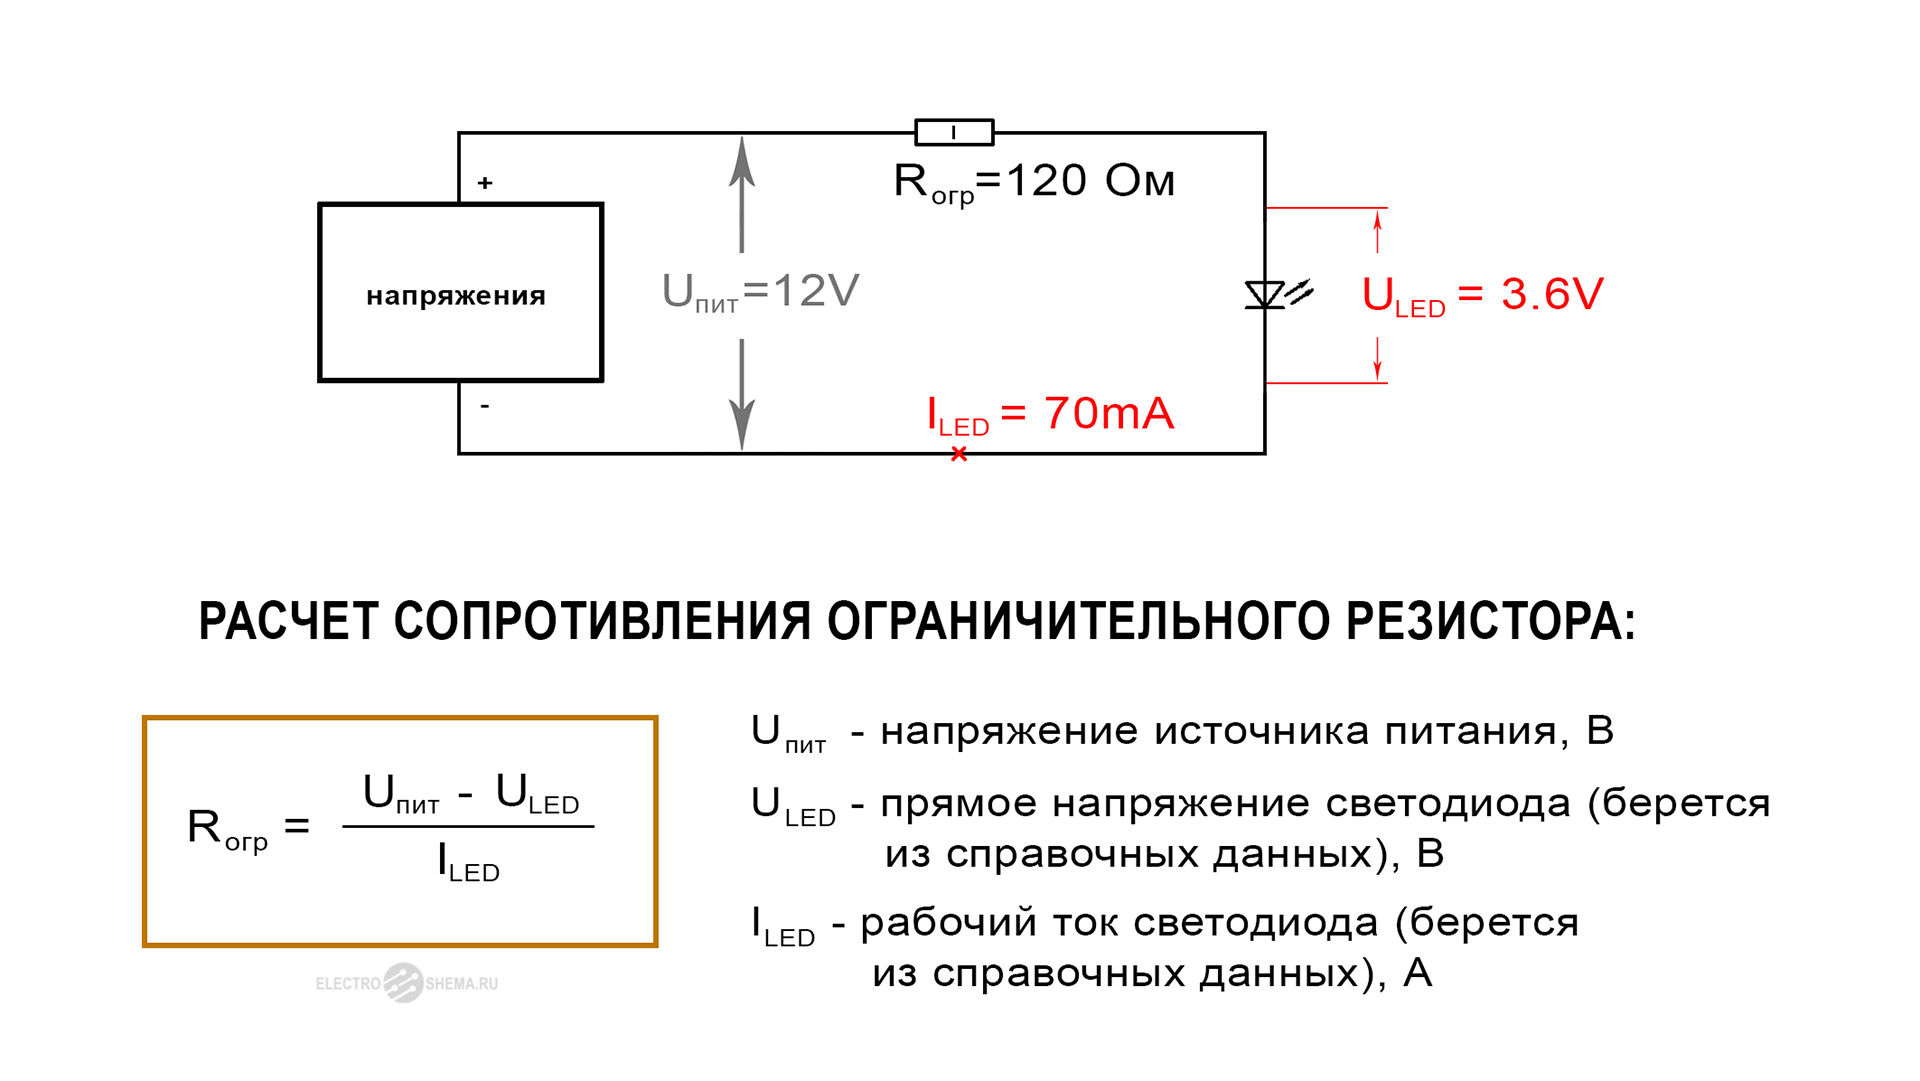 Как рассчитать какой нужен стабилизатор. Формула расчёта сопротивления резистора для светодиодов. Как рассчитать резистор для светодиода. Как рассчитать резистор для диода. Как рассчитать сопротивление резистора подключенного к светодиоду.